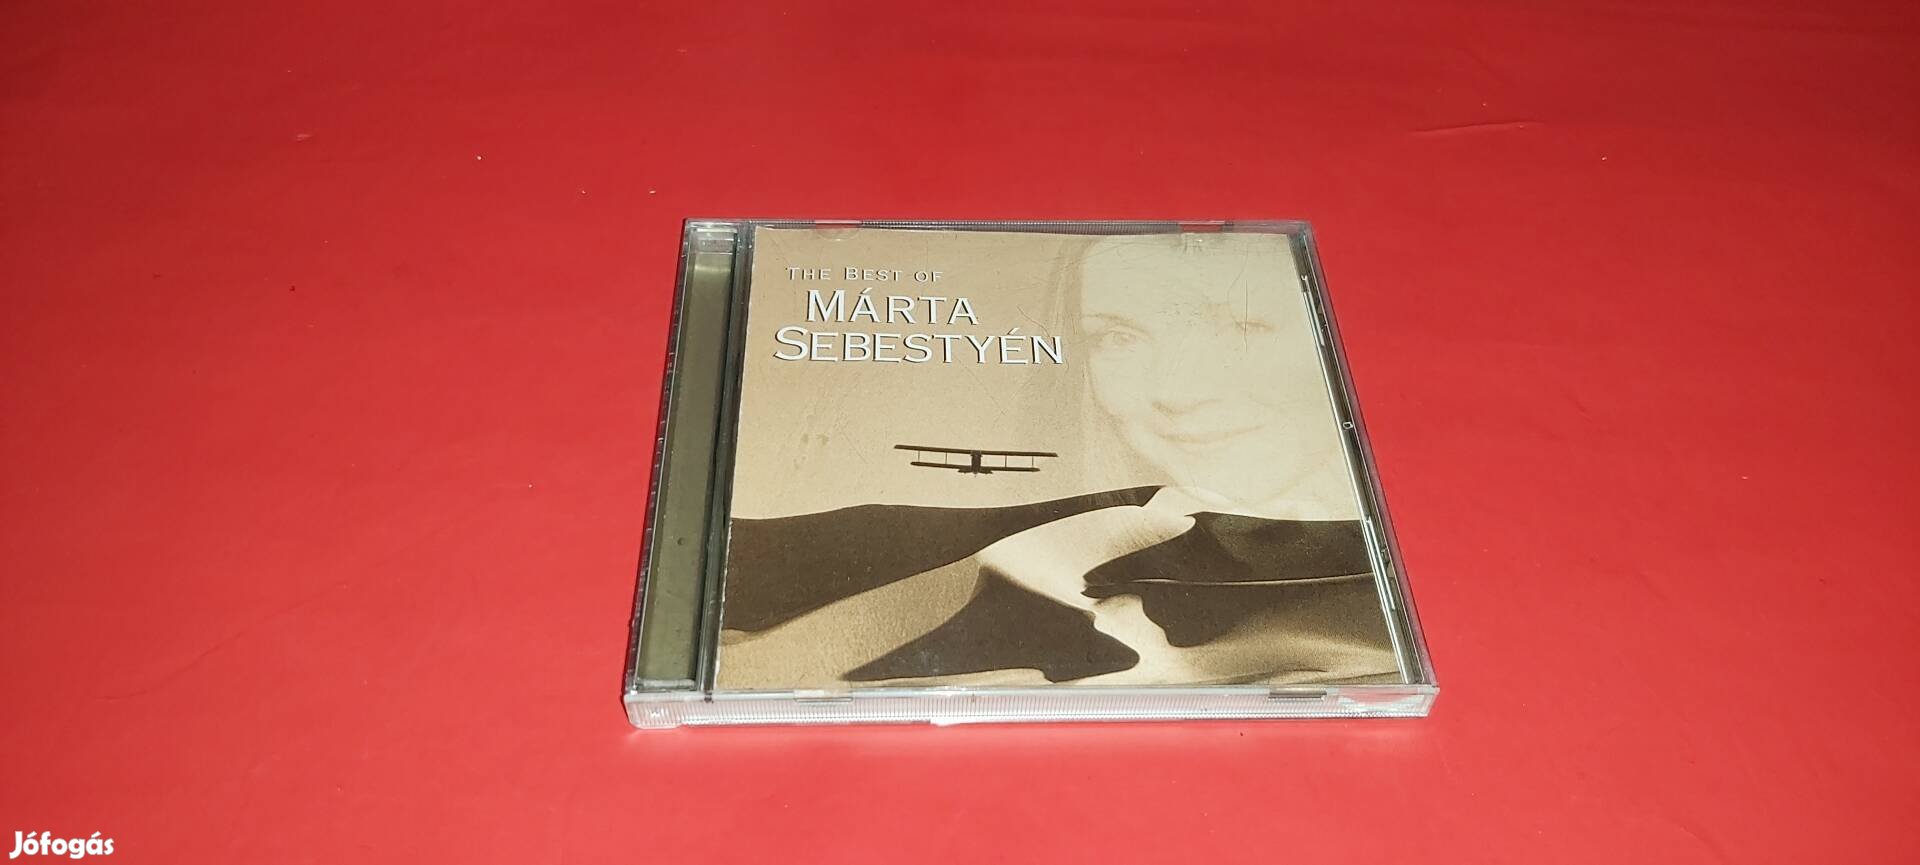 Sebestyén Márta Best of Cd 1997